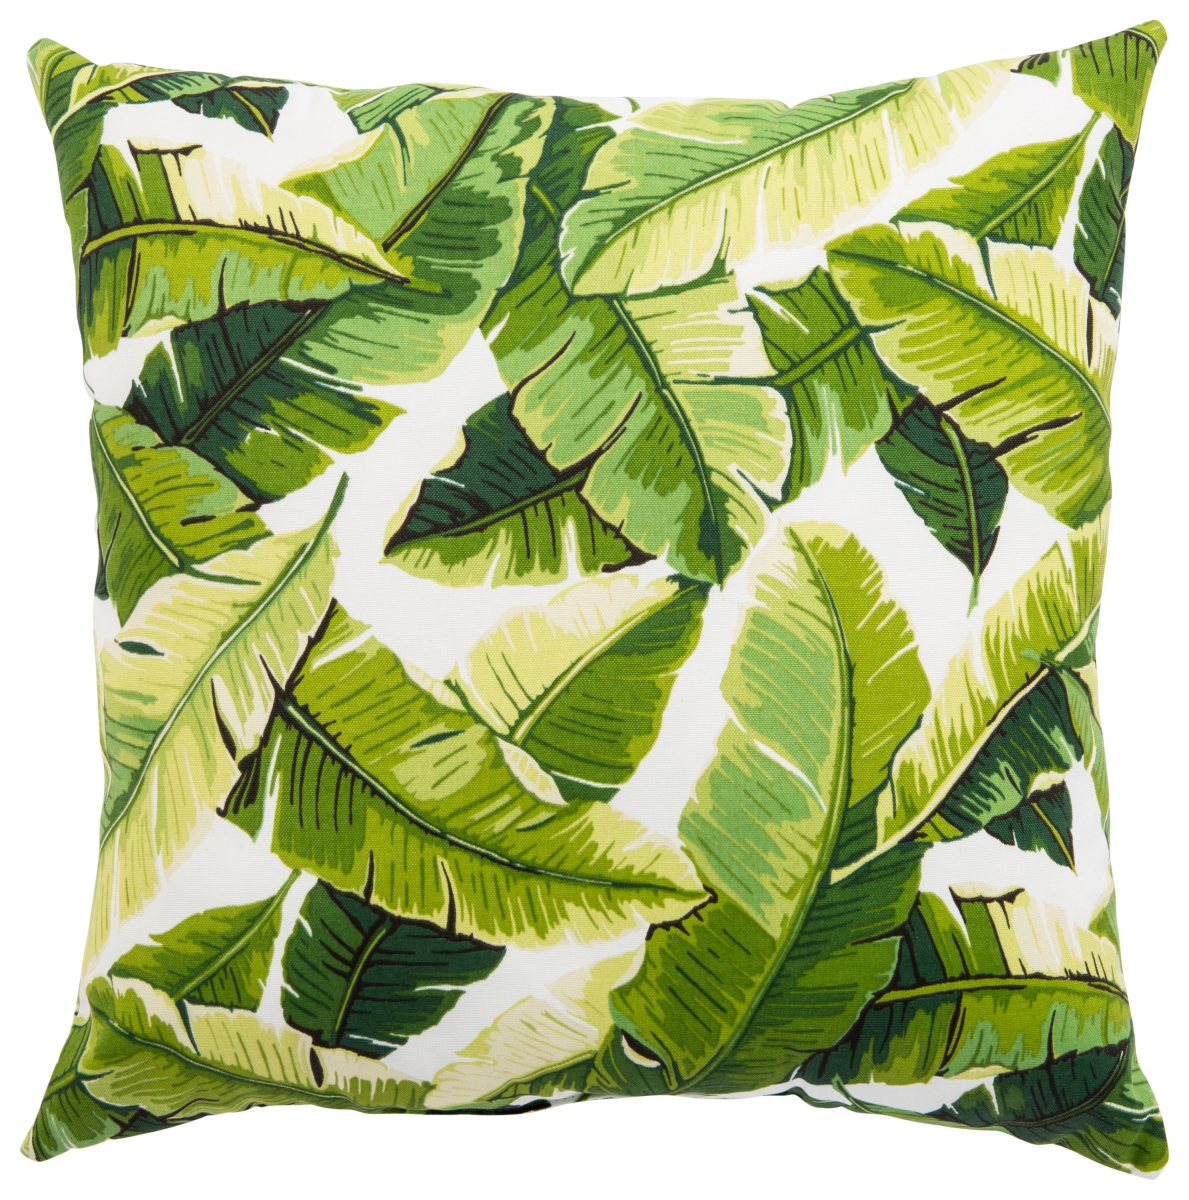 Plp100073 18 X 18 In. Veranda Balmoral White & Green Floral Indoor & Outdoor Throw Pillow